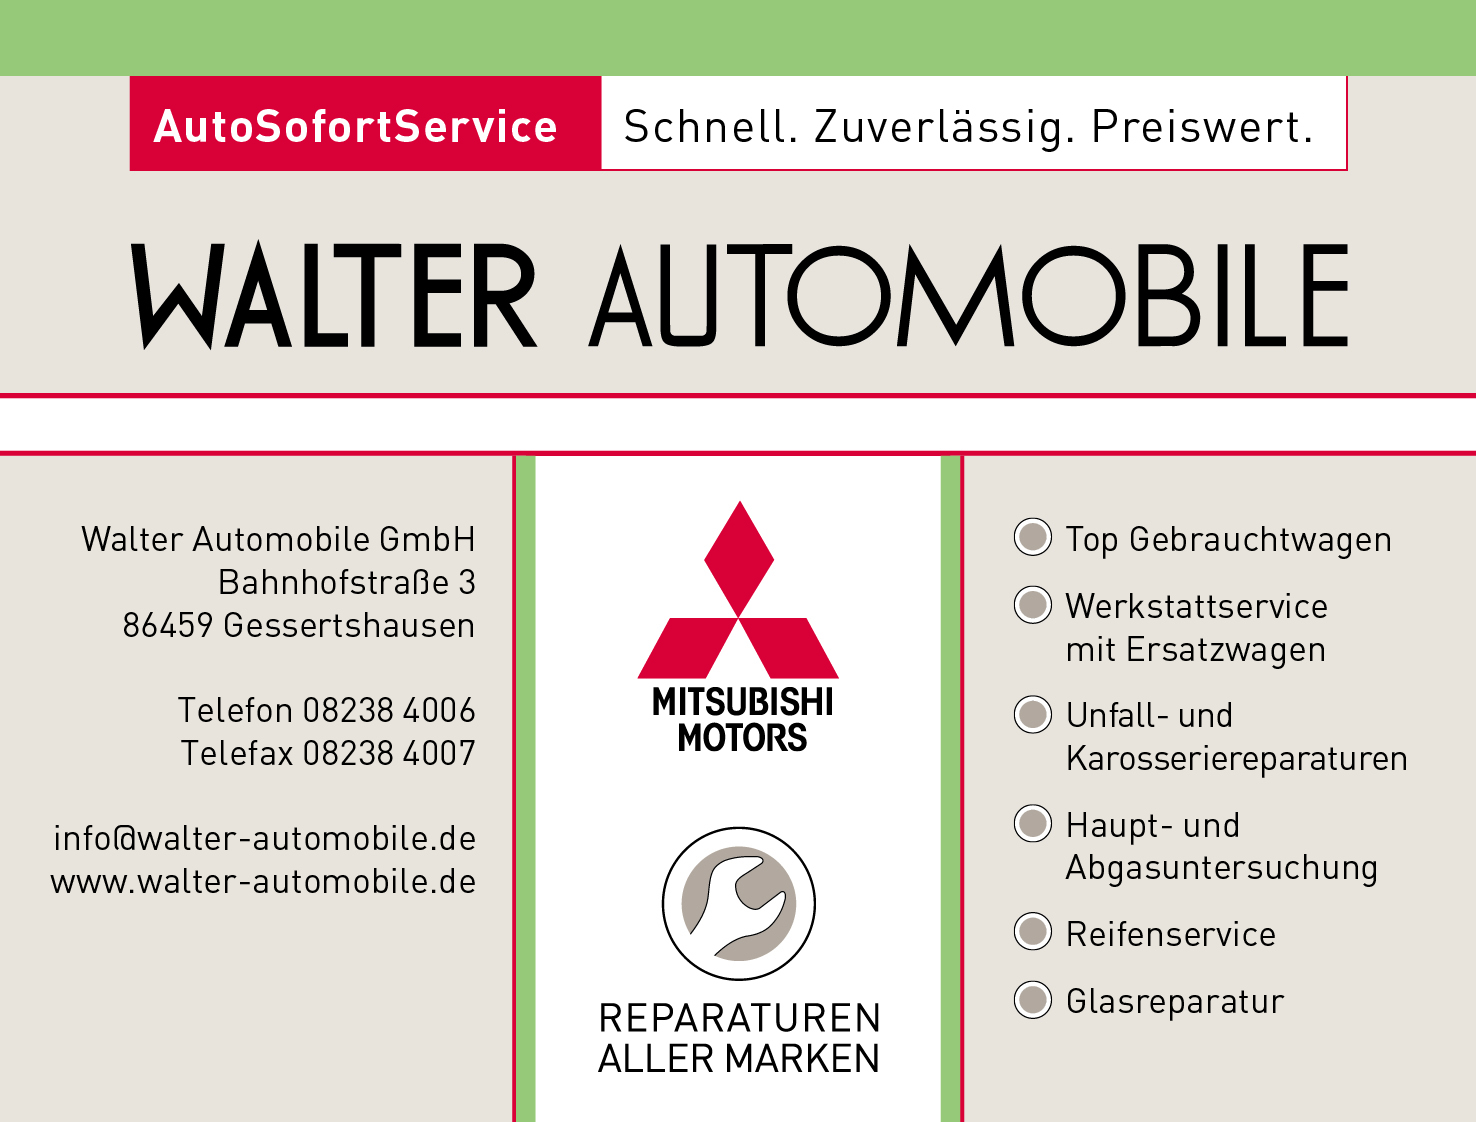 Walter Automobile GmbH